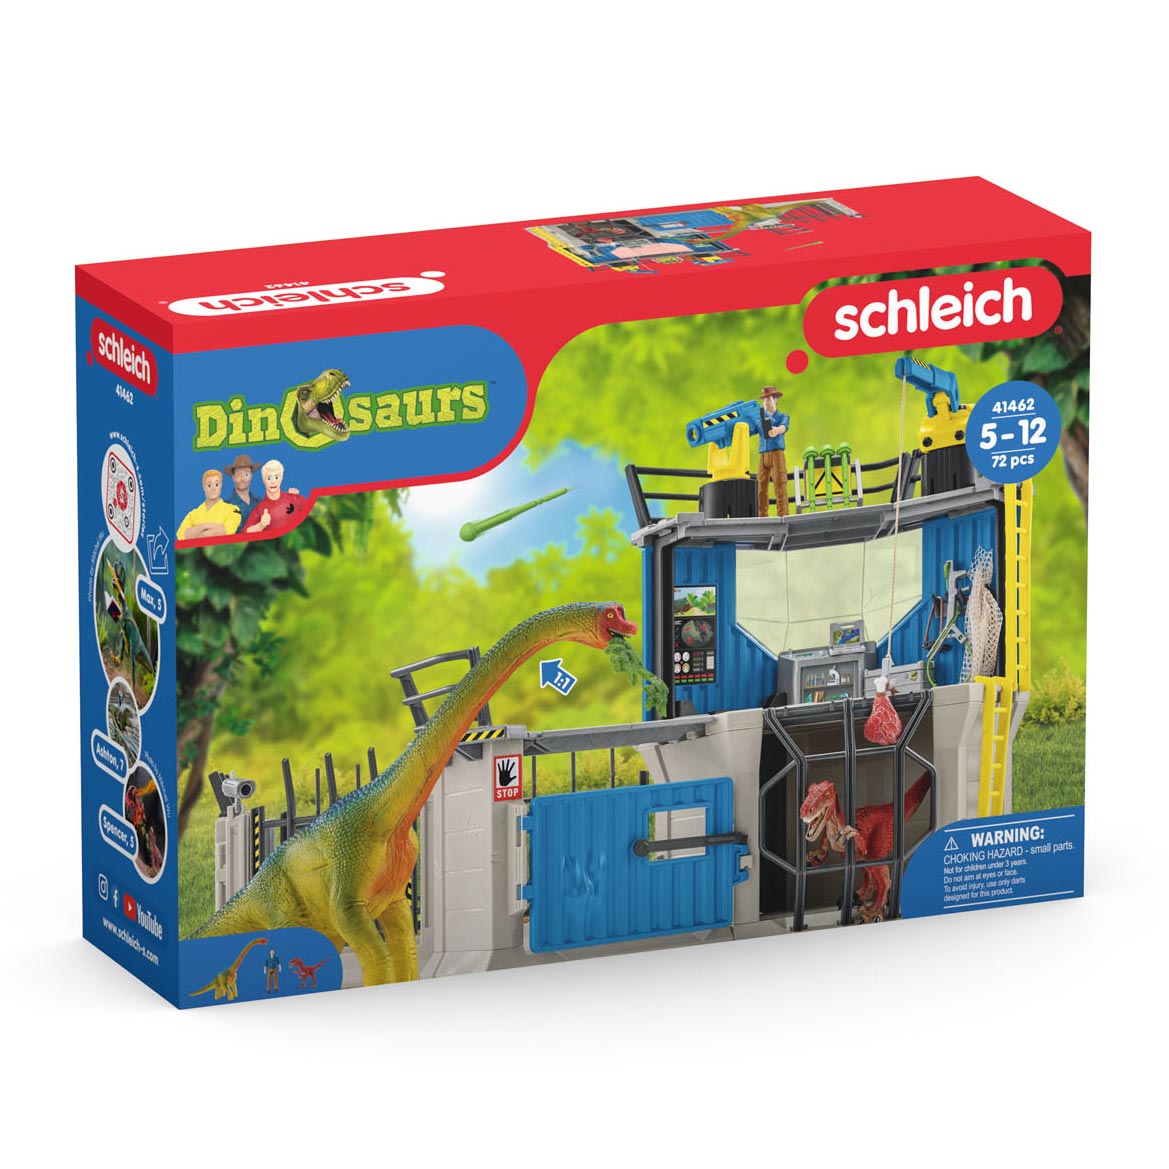 Schleich DINOSAURS Große Dino-Forschungsstation 41462